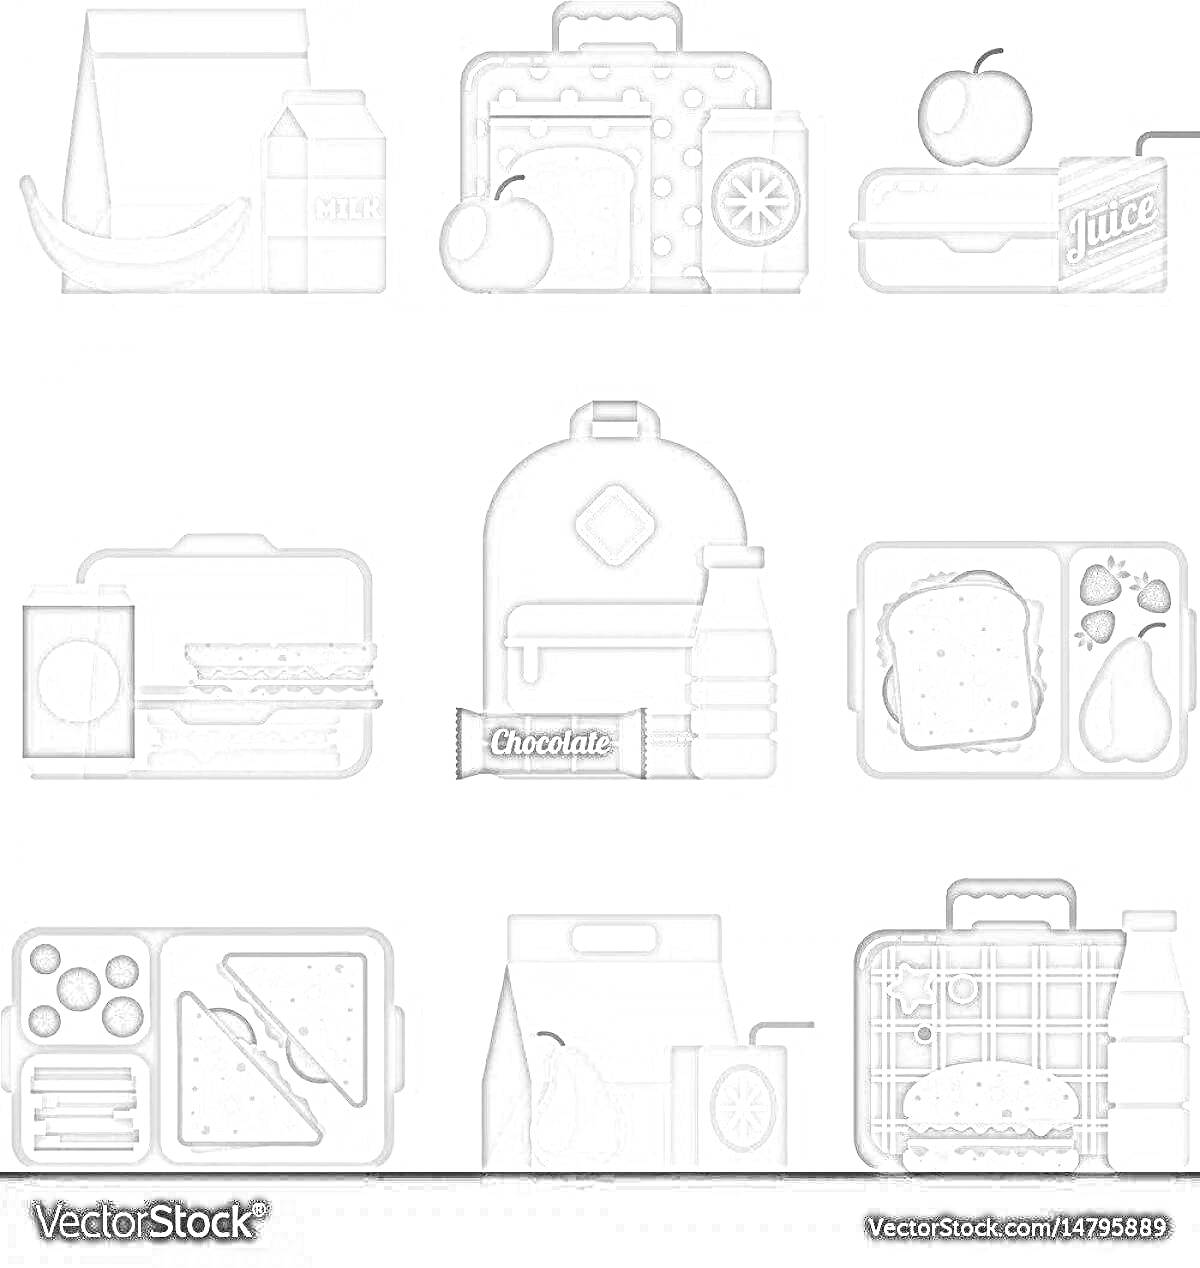 Раскраска Ланч бокс с различными элементами (сумка, коробка с сендвичами, яблоко, коробка с соком, шоколад, бутылка воды, банан, молоко)